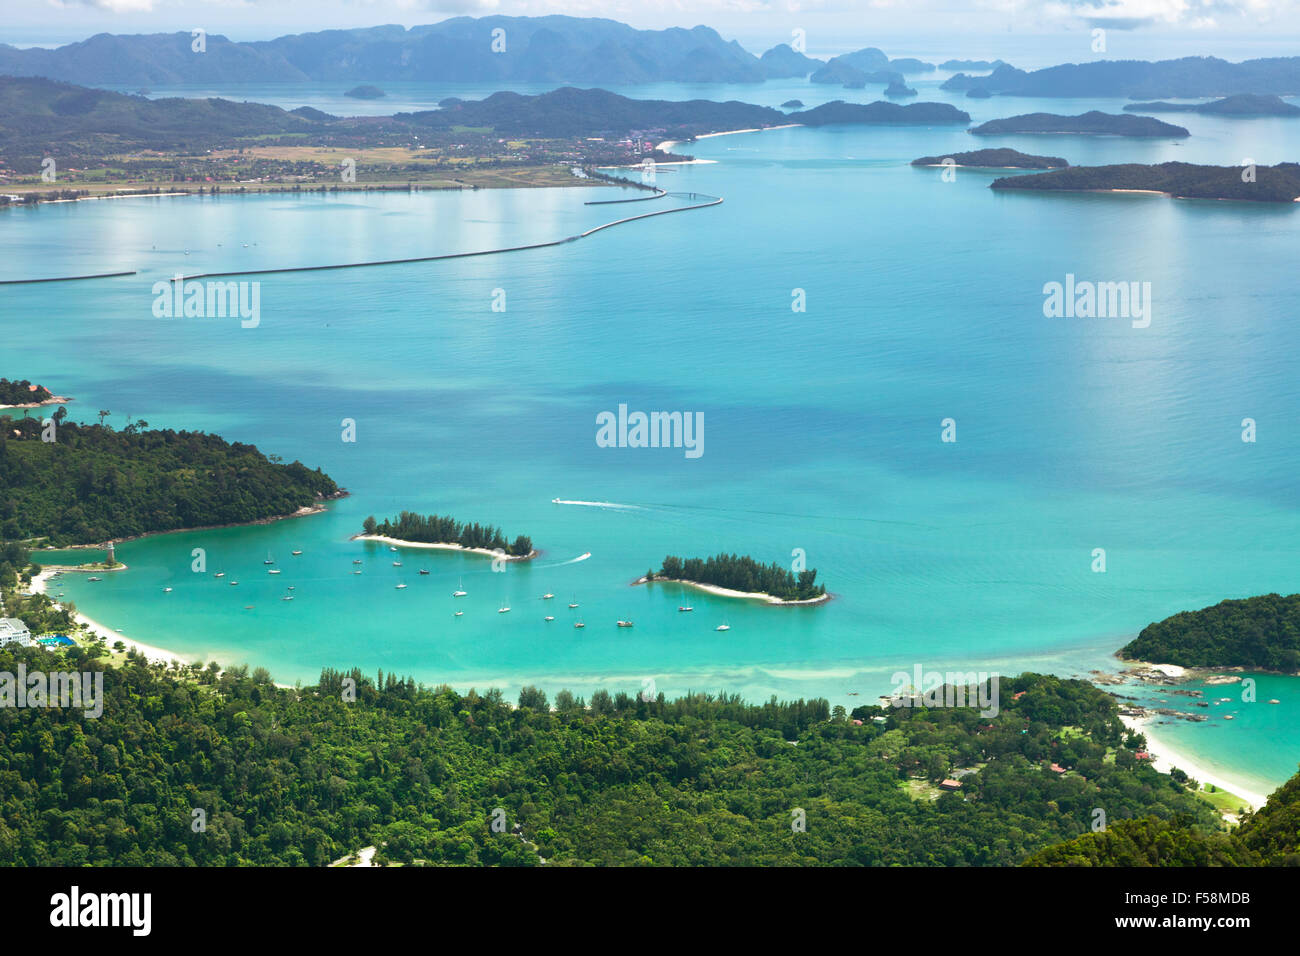 Vue de l'île de Langkawi à partir de la plate-forme d'observation. La Malaisie. Banque D'Images